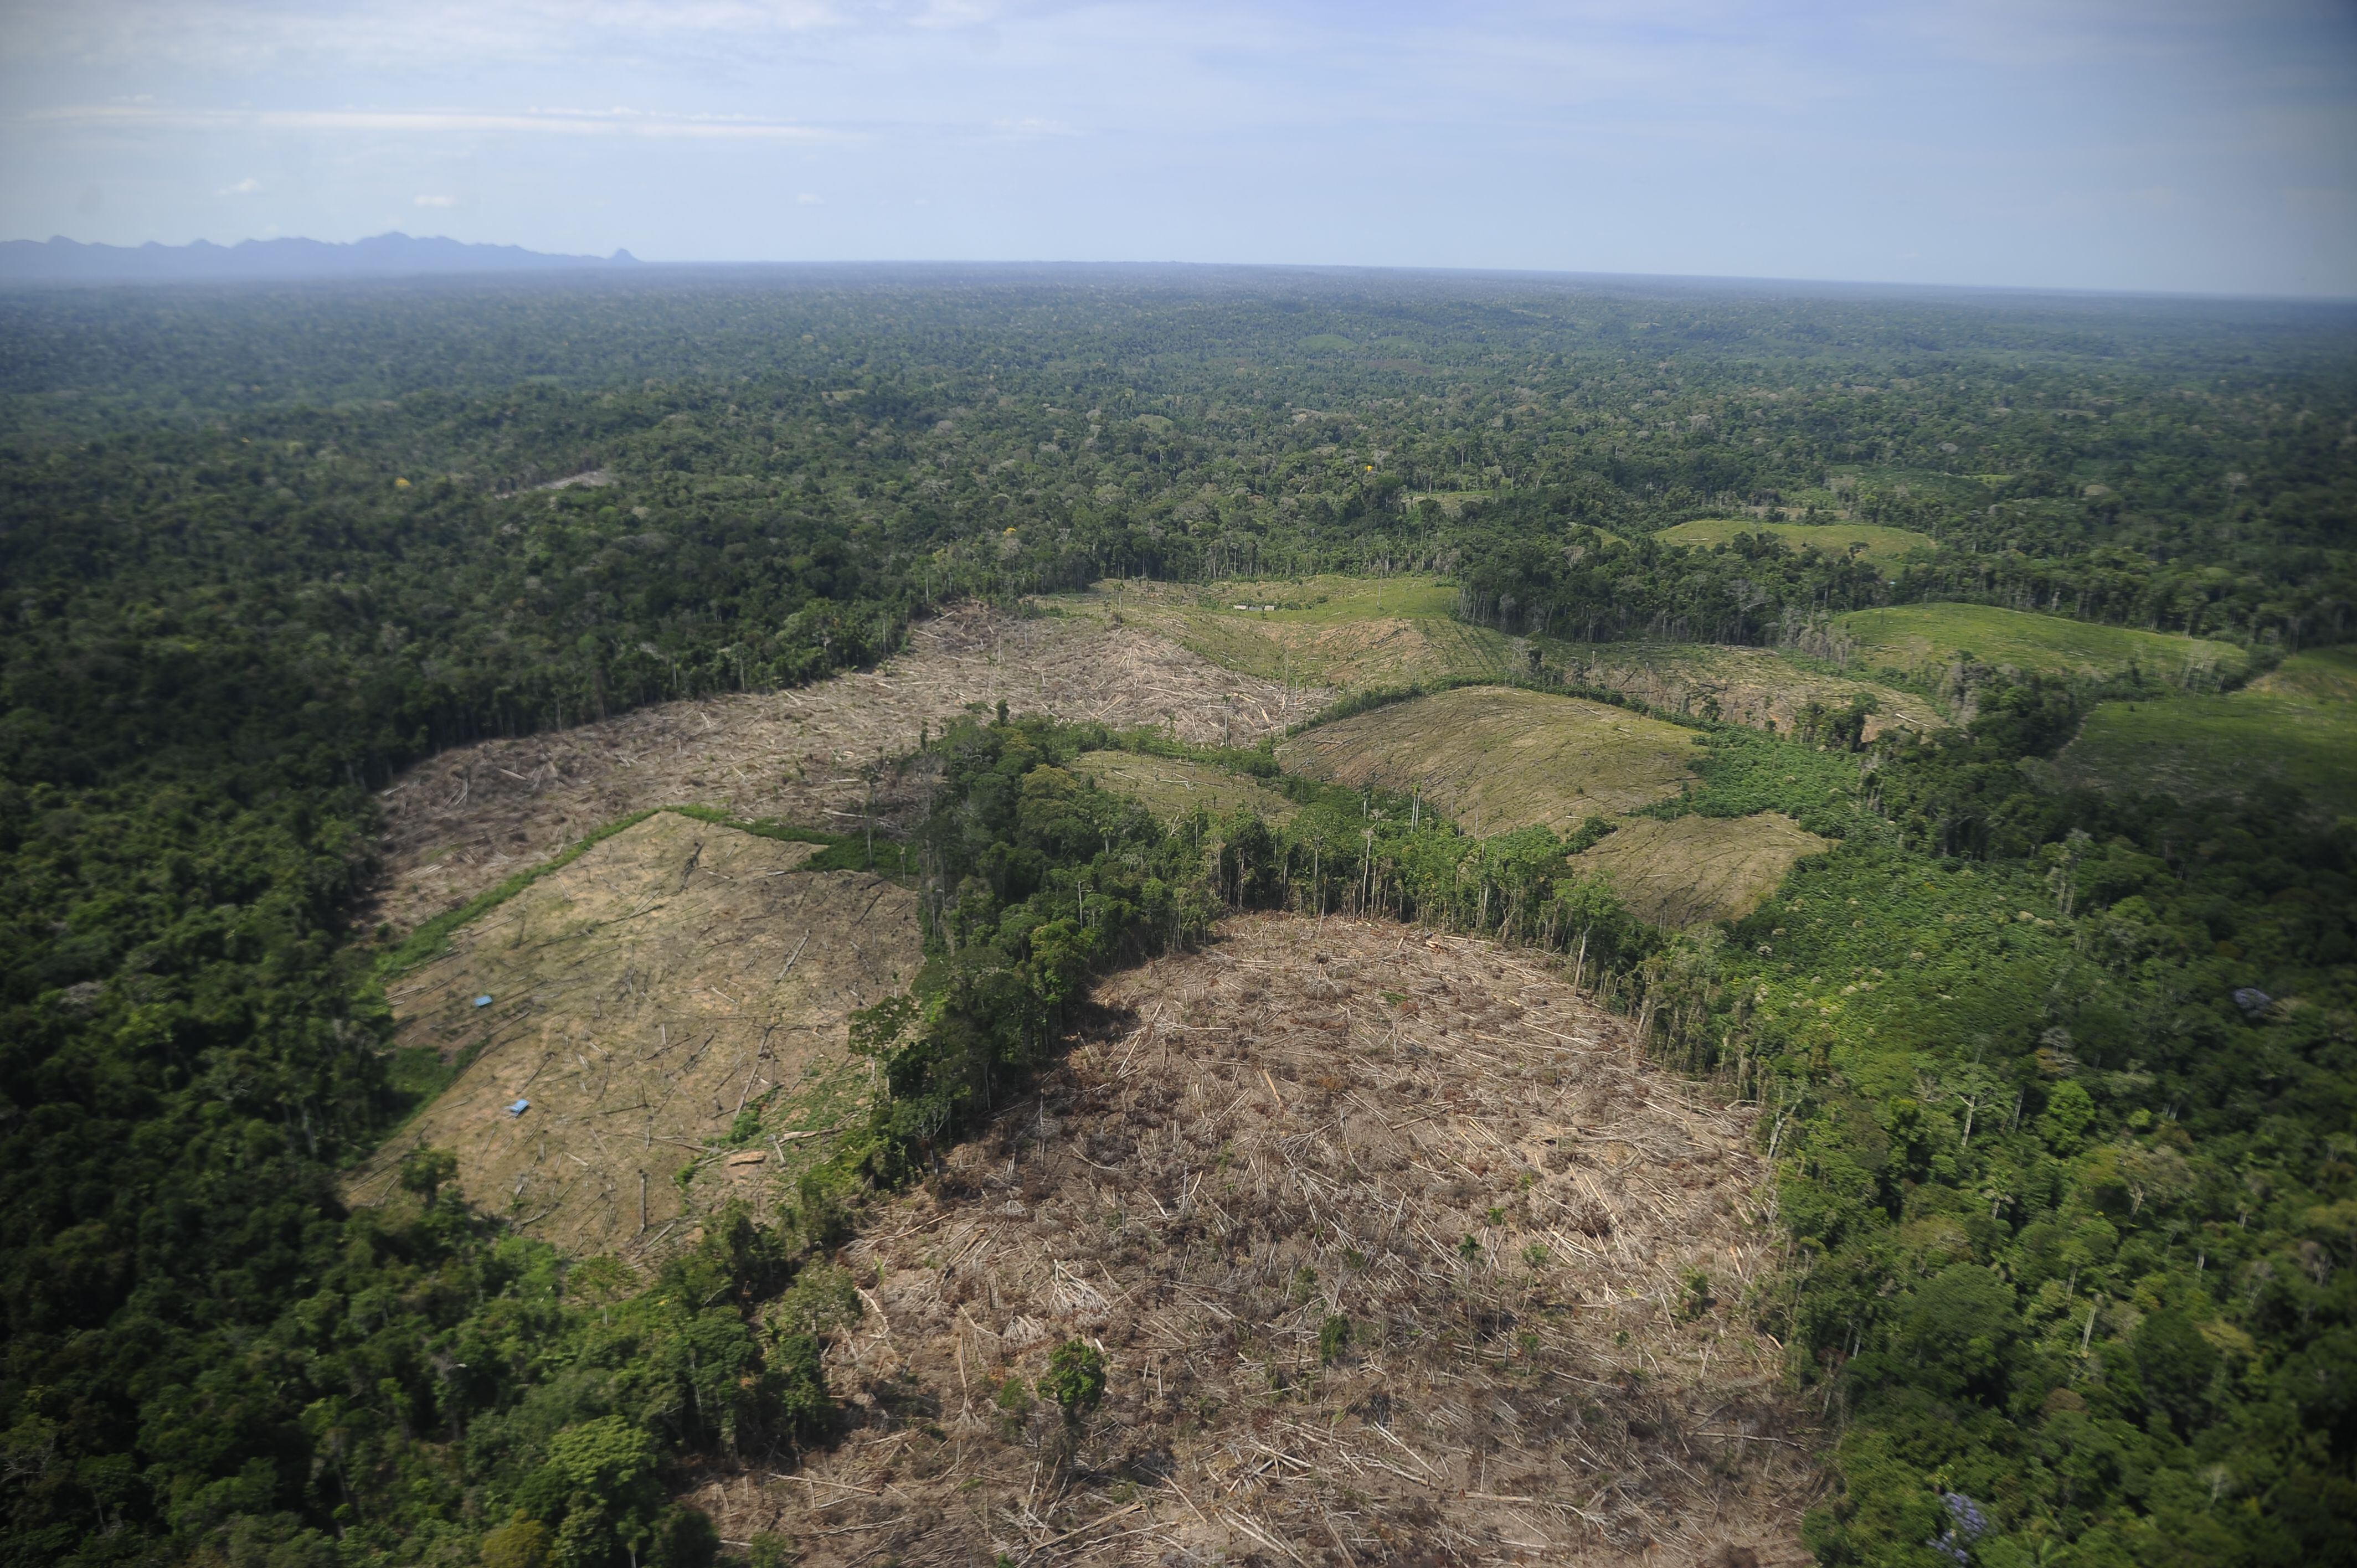 Las áreas de las Zonas de Amortiguamiento del parque Sierra del Divisor han sido deforestadas pese a la prohibición. El panorama aéreo es desolador